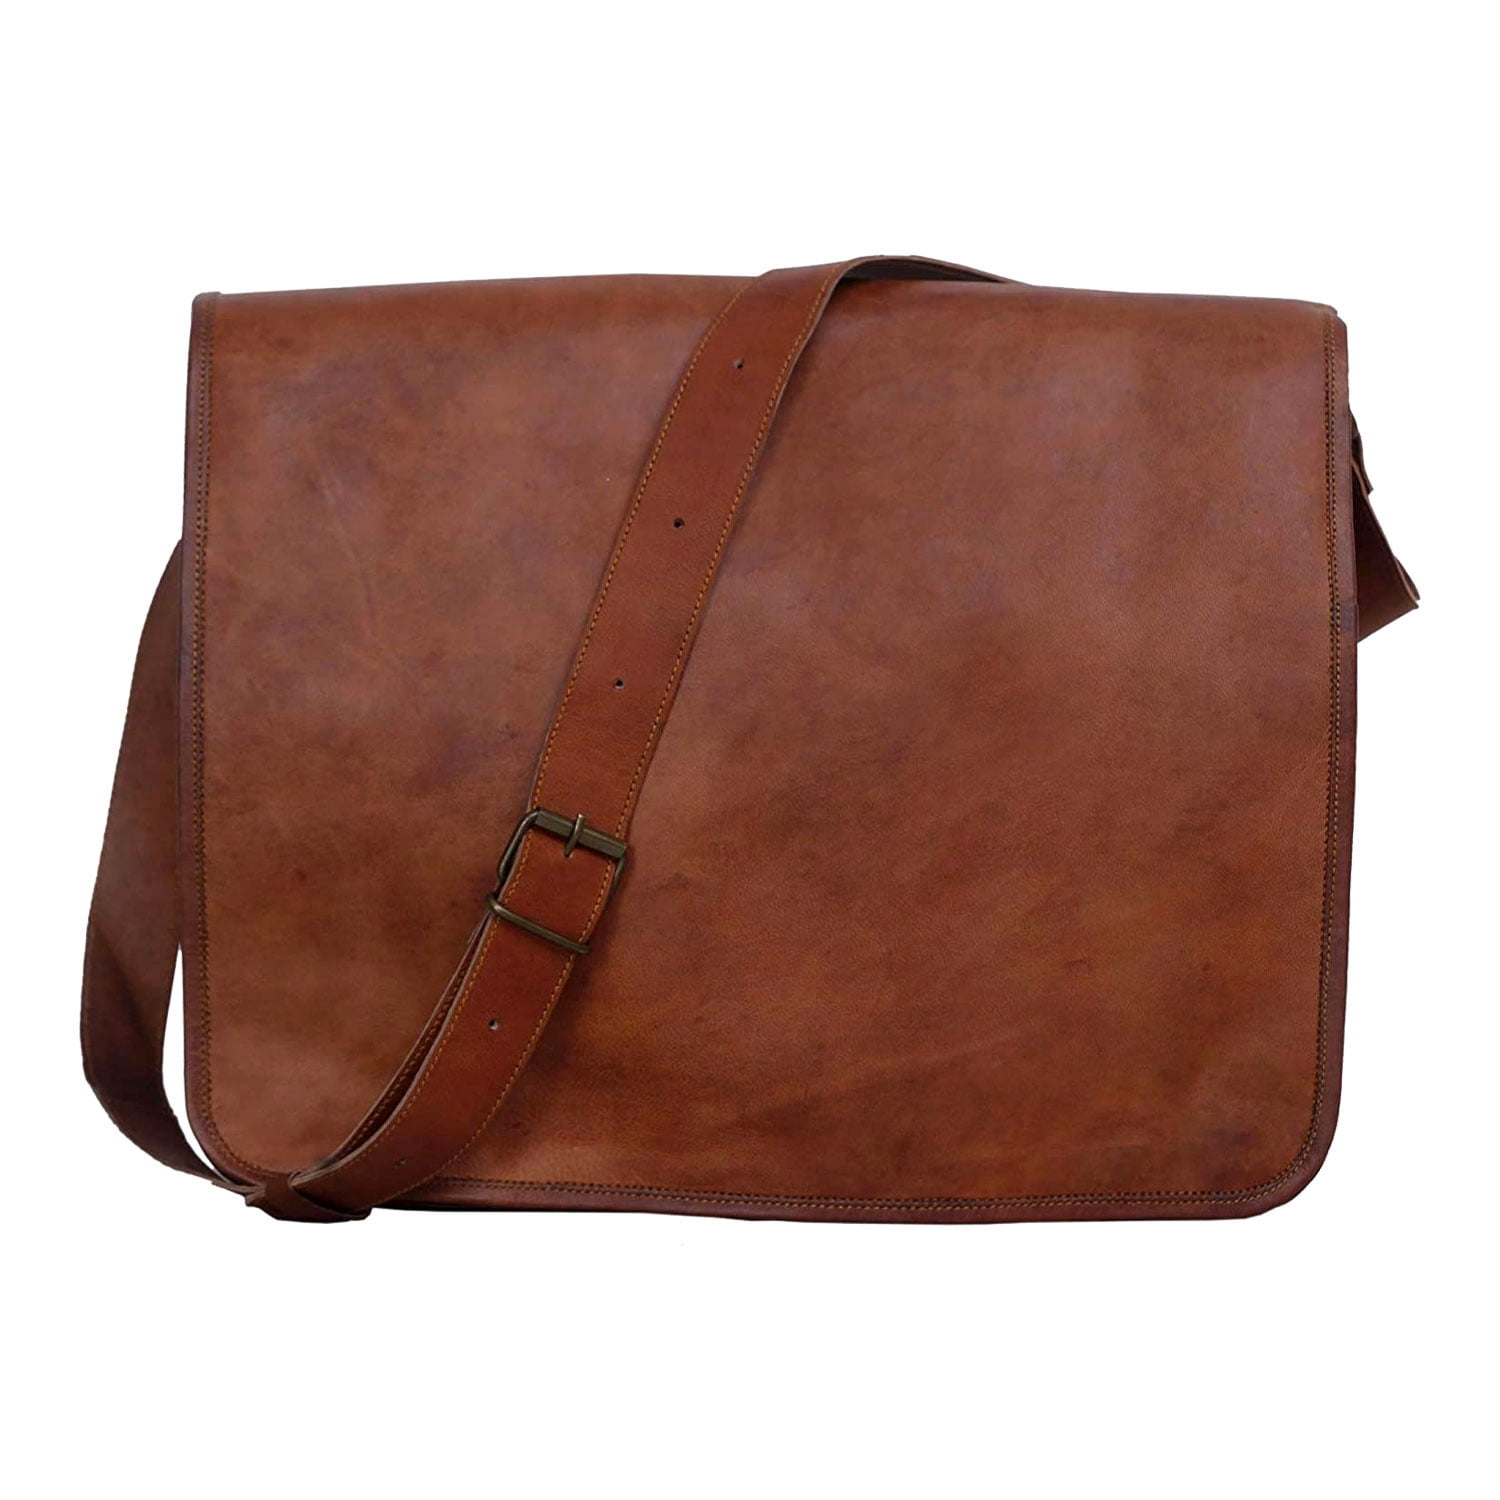 Vintage Leather Messenger Bag 17" Laptop Satchel School Crossbody Shoulder Bag 